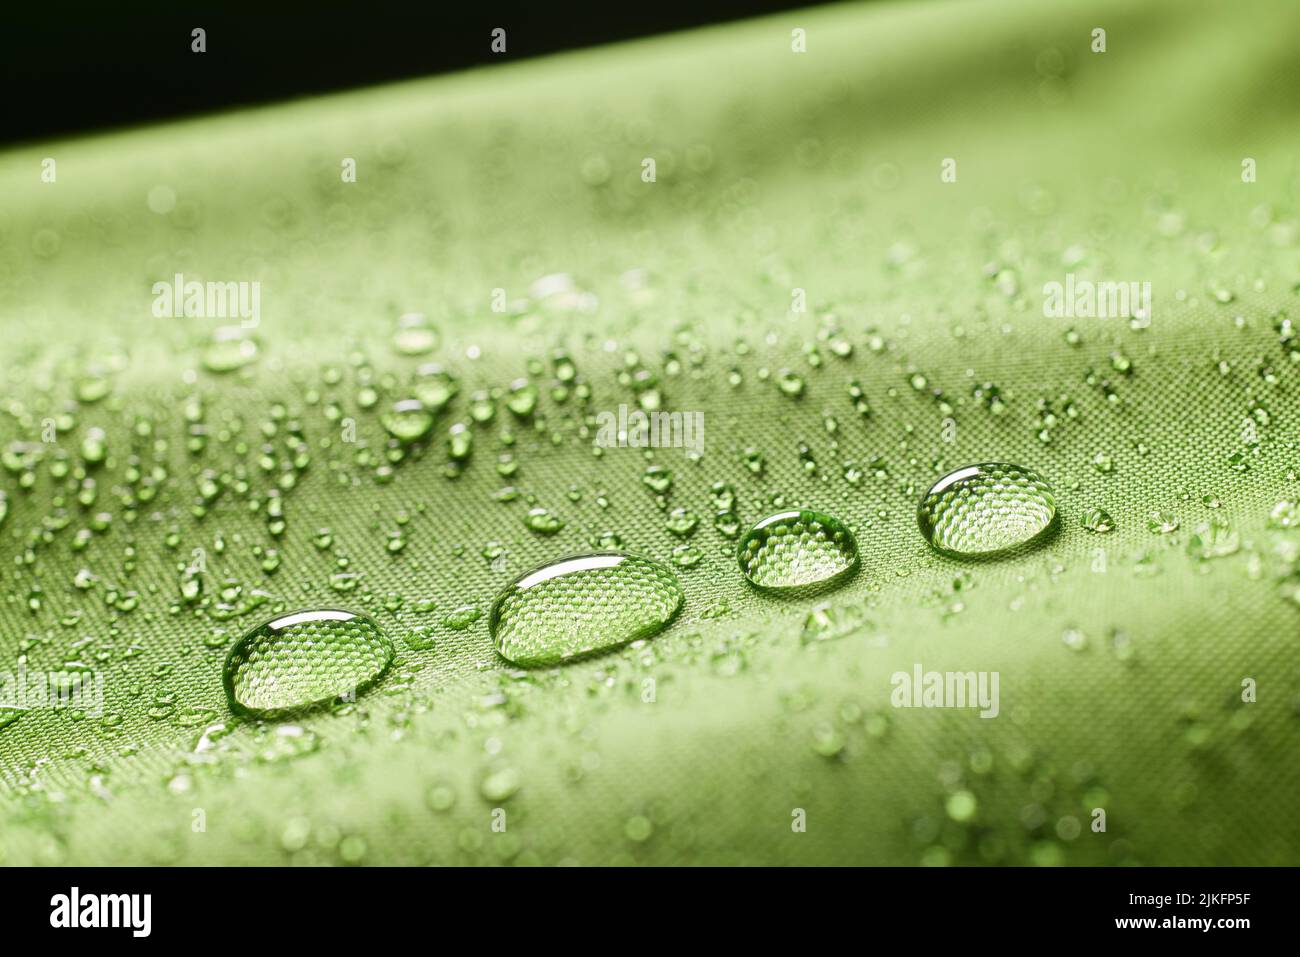 Primo piano abbondanza di gocce d'acqua pulita trasparente su tessuto impregnato verde acqua testurizzata su sfondo sfocato in ambienti luminosi Foto Stock